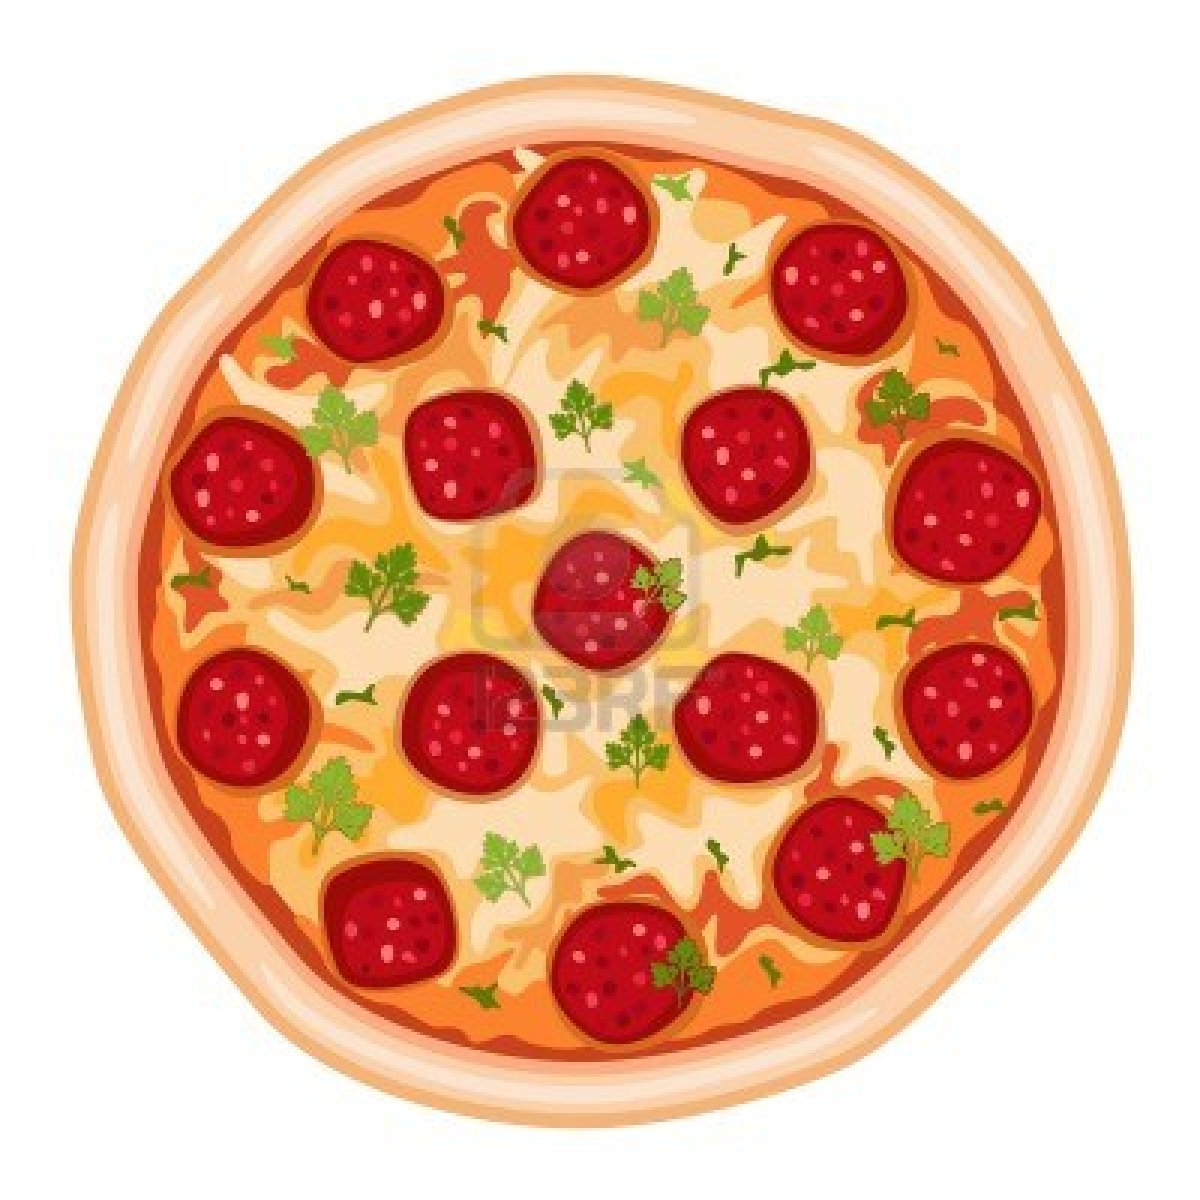 Free Cartoon Sliced Pizza Cli